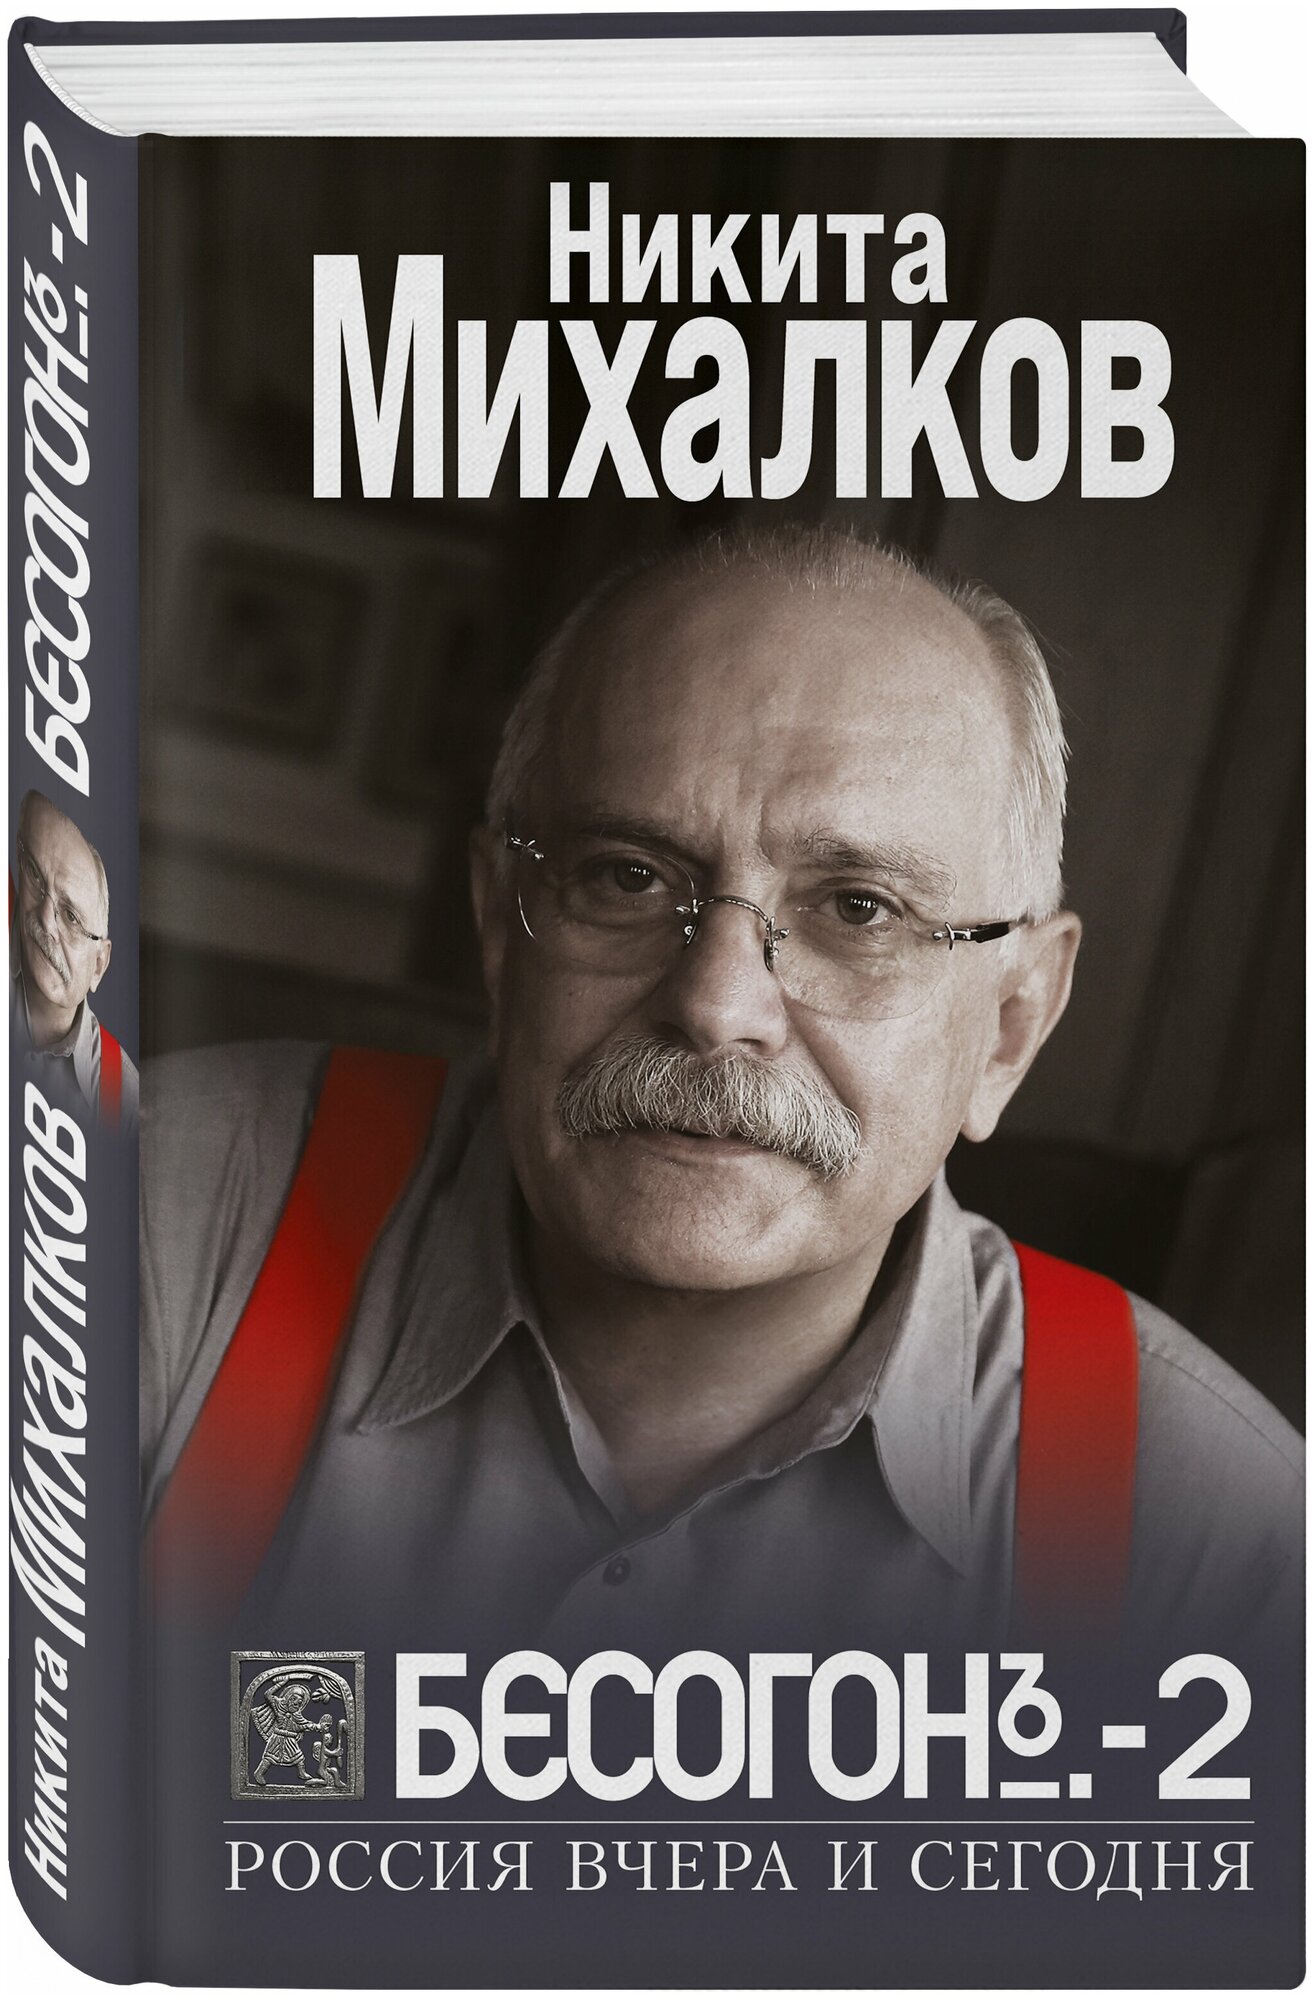 Бесогон 2 Россия вчера и сегодня Книга Михалков Никита 16+